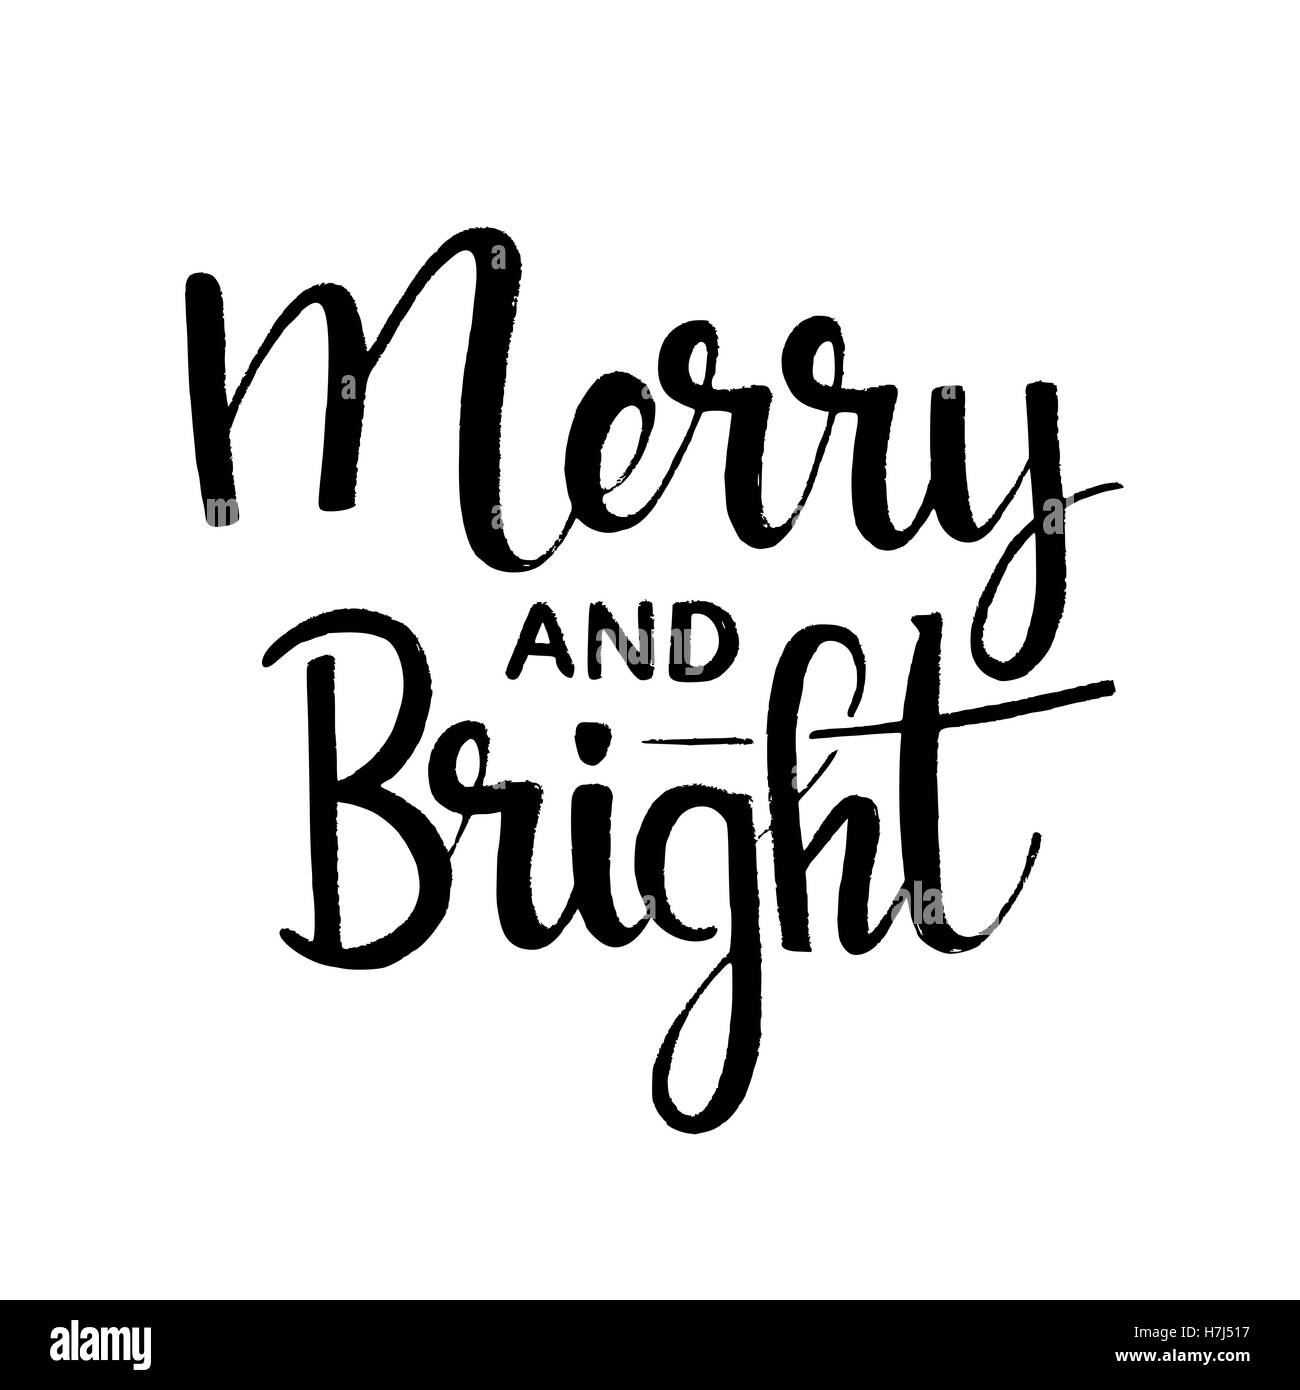 Allegro e luminoso inchiostro manoscritta lettering. Merry Christmas greeting card. Vettore moderno disegnato a mano la calligrafia con bordi irregolari Illustrazione Vettoriale